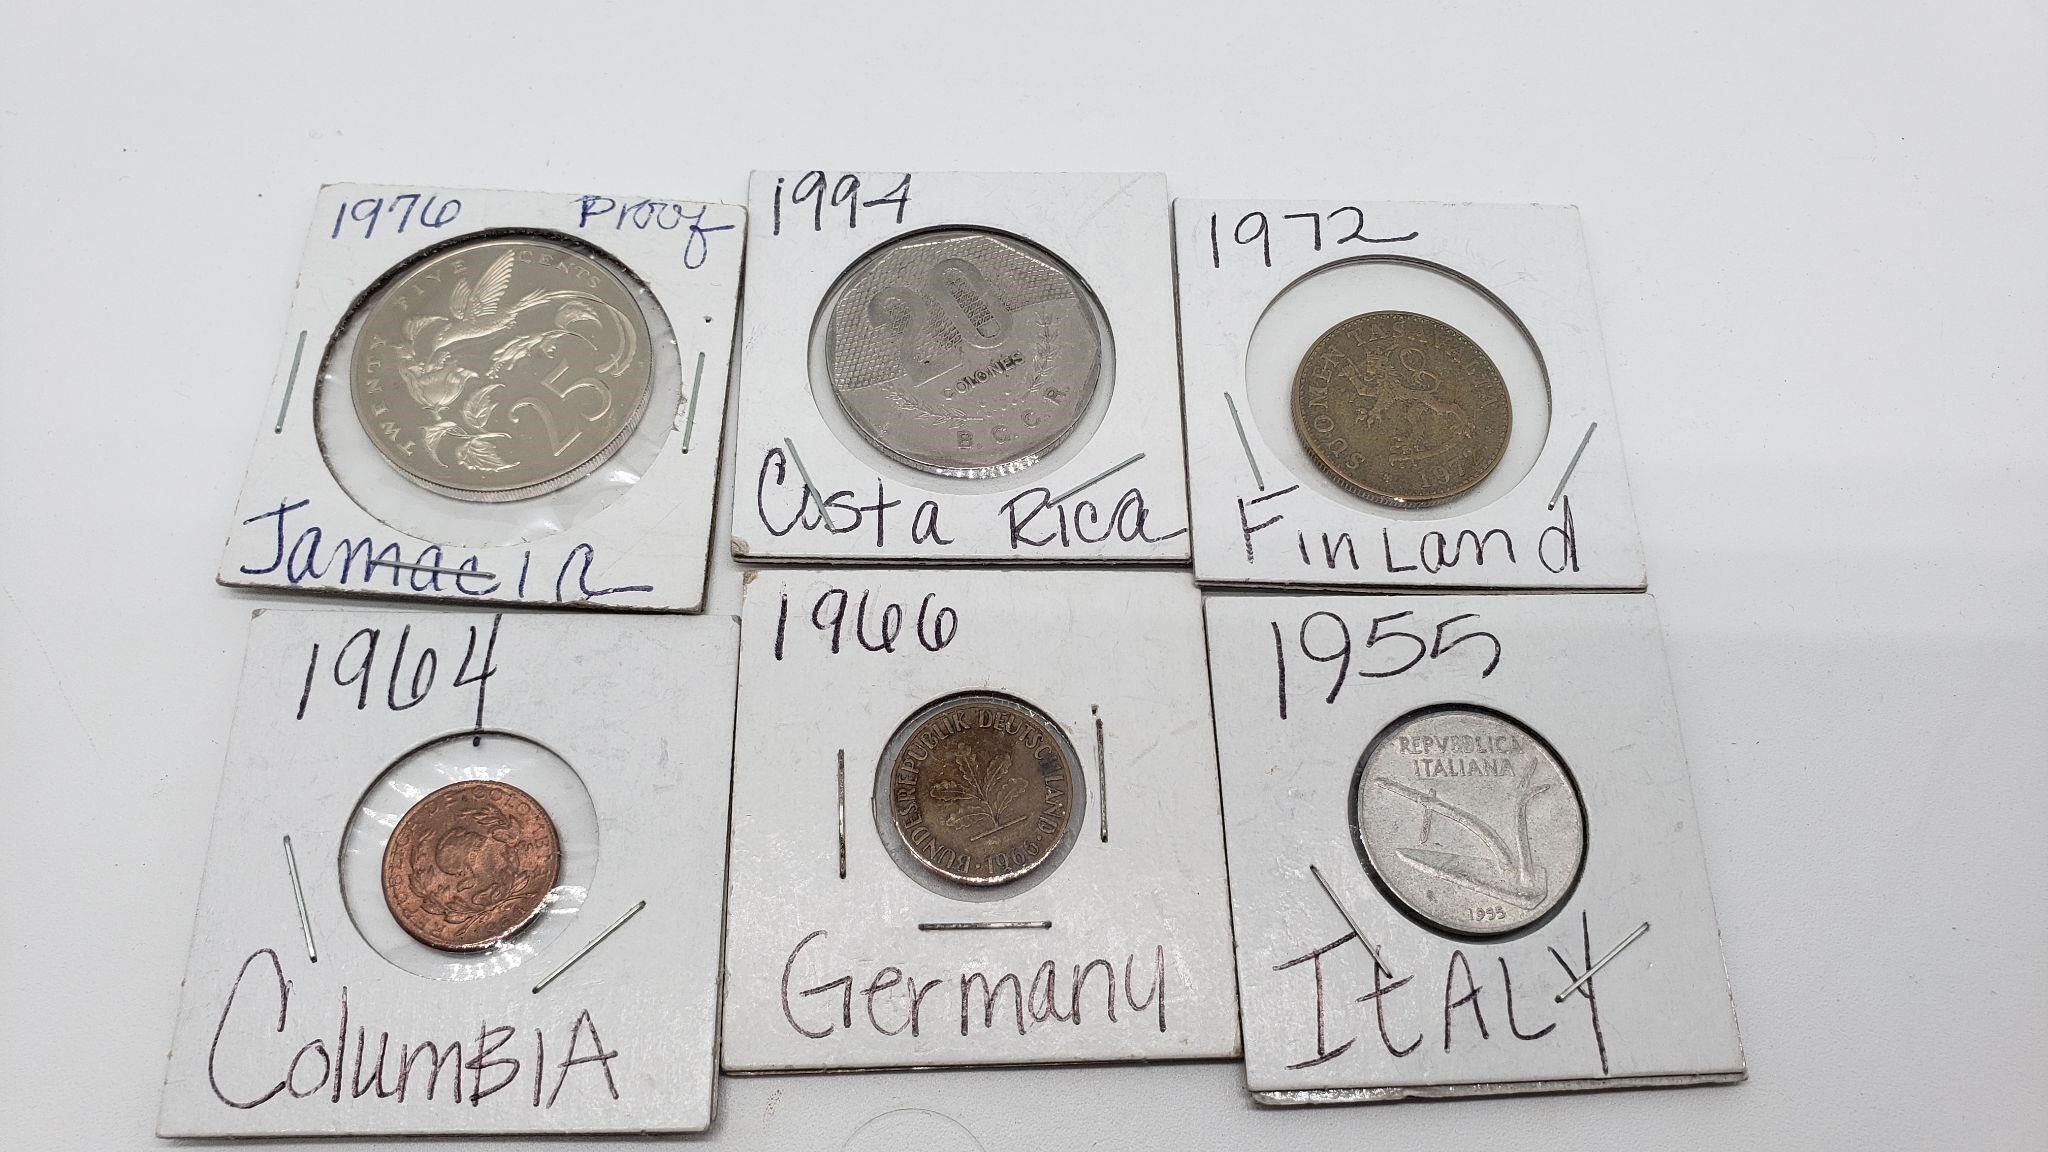 Coins Jamaica, Costa Rica, Finland, Columbia etc.